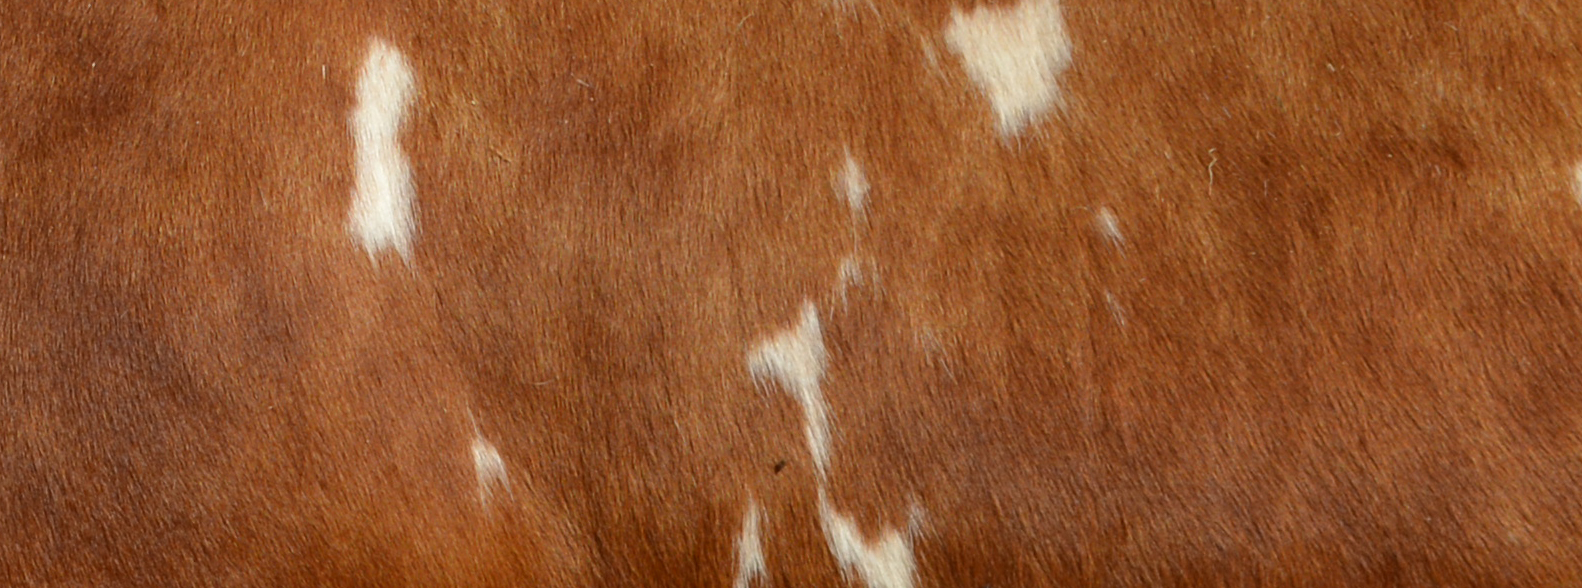 Pelage d'une vache ferrandaise barrée rouge